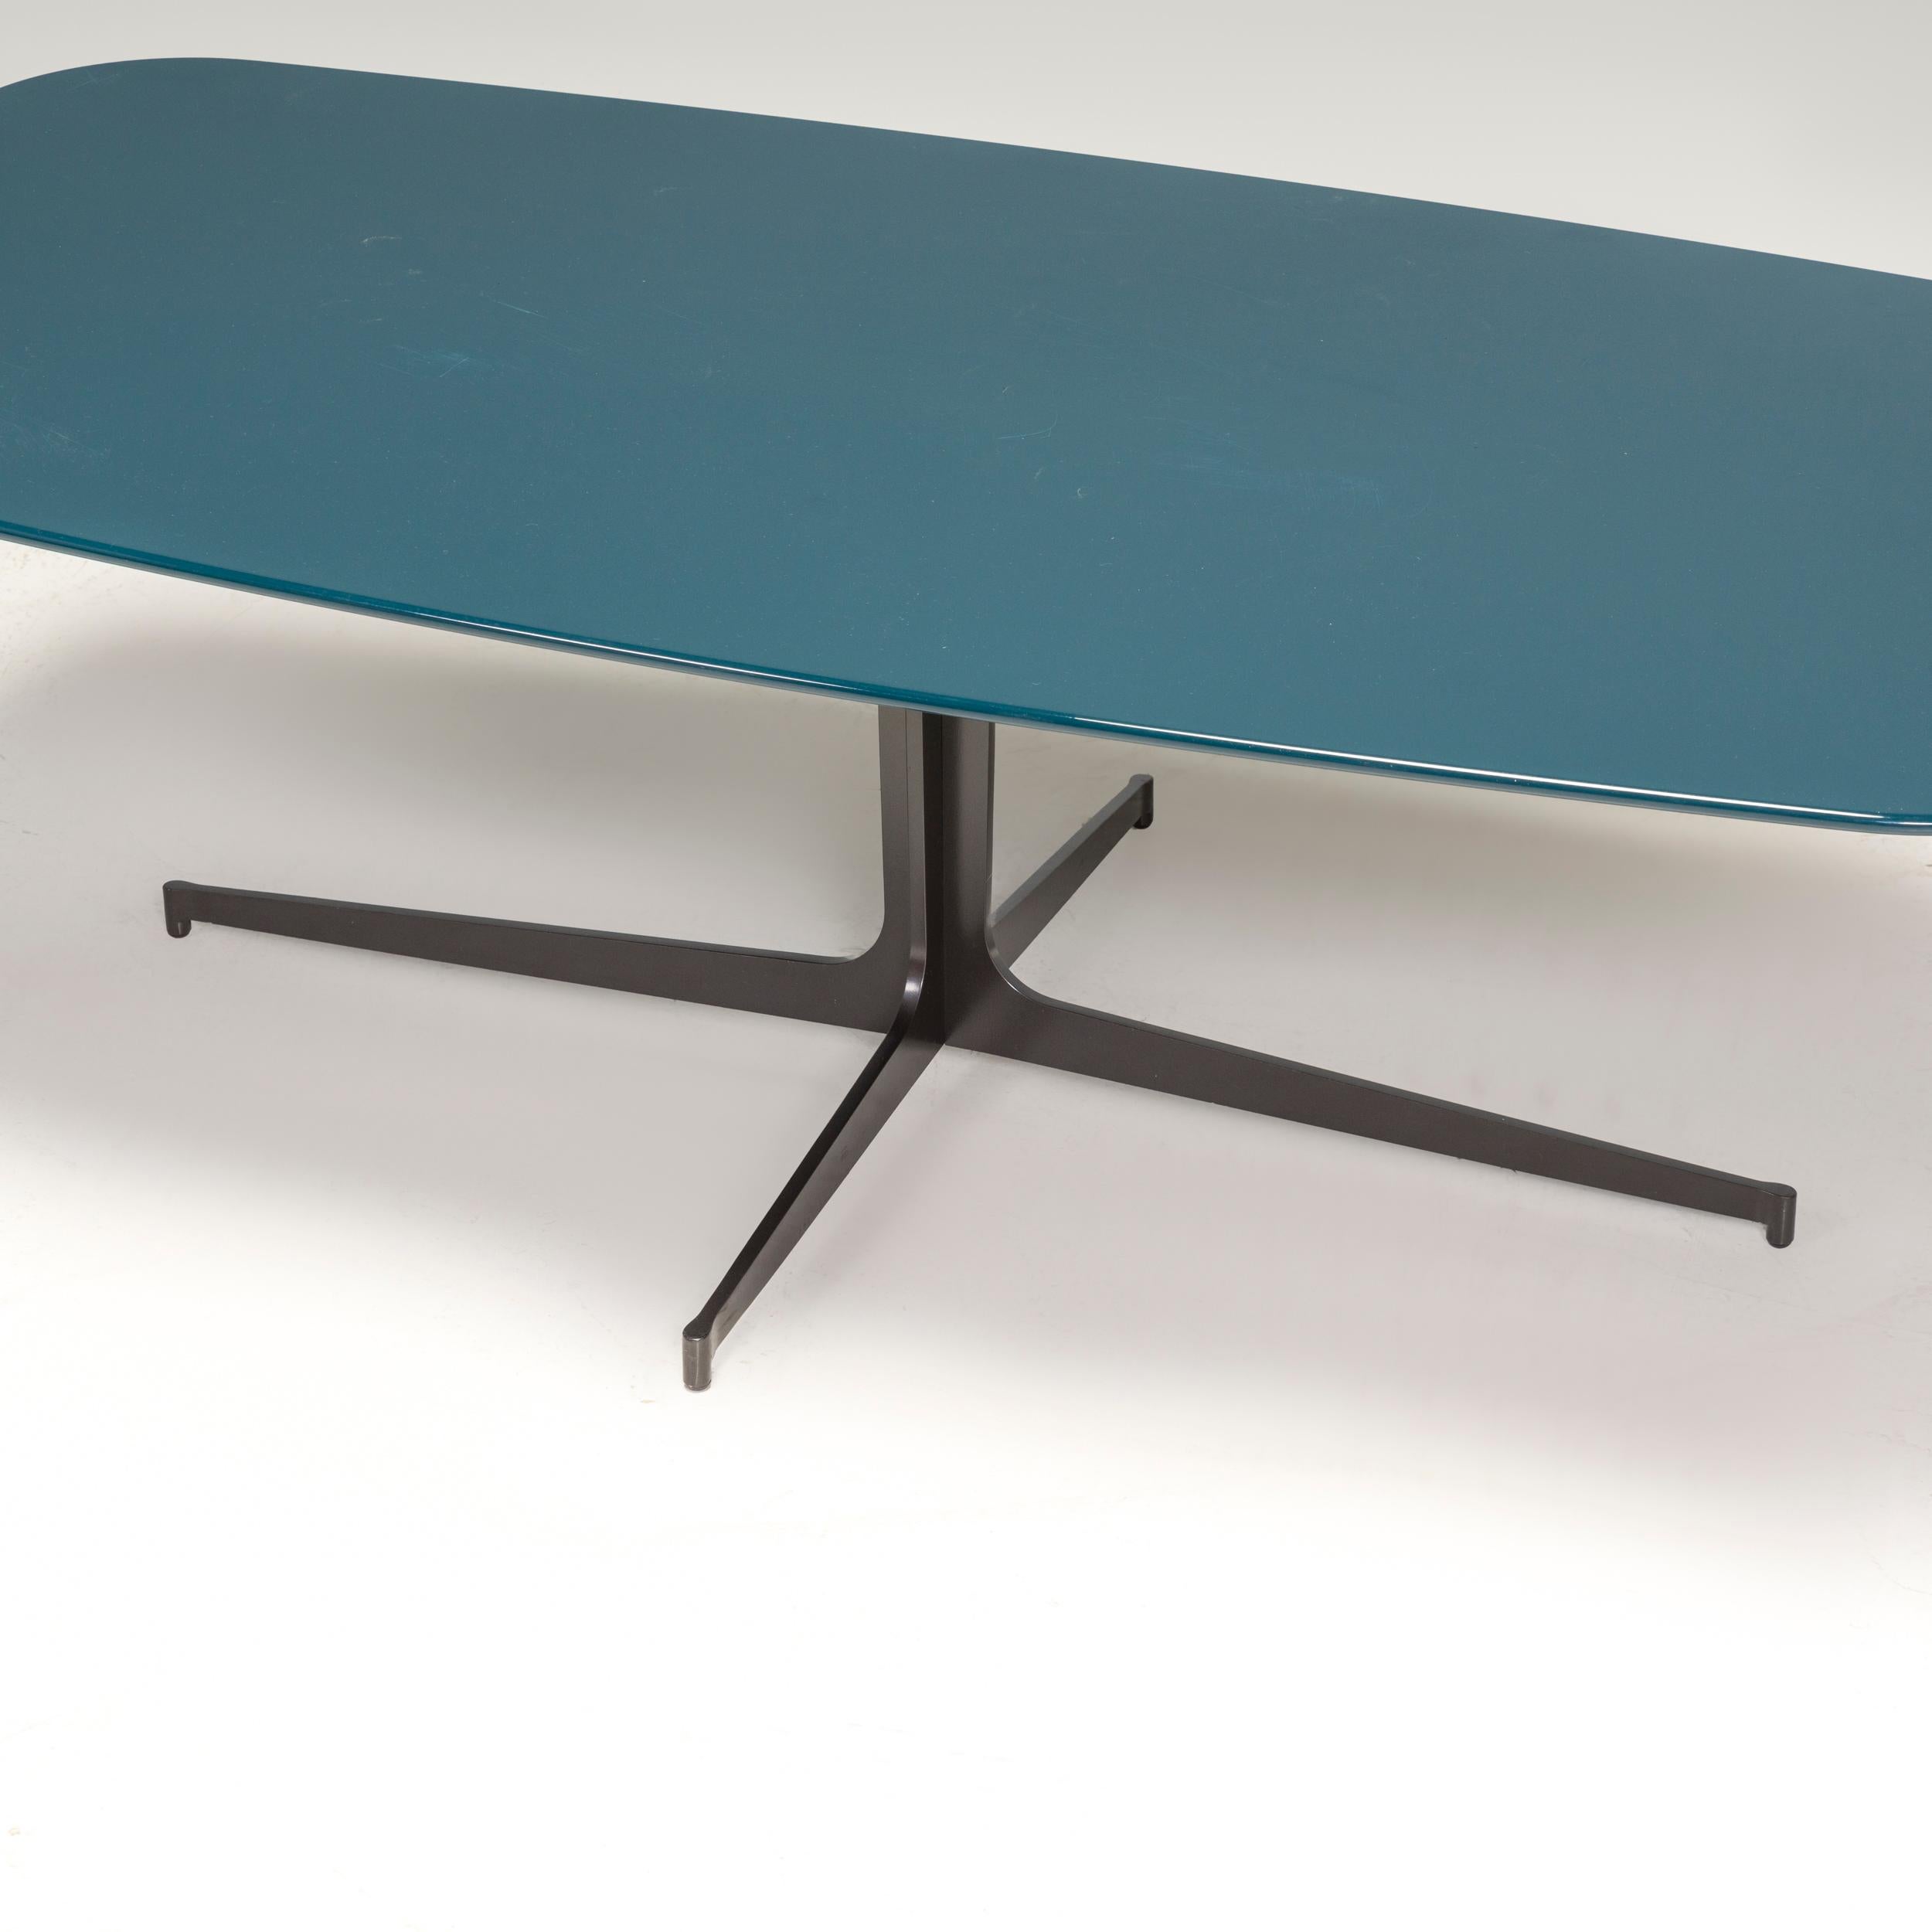 Conçue à l'origine par Rodolfo Dordoni en 2010 et fabriquée par Minotti, cette table basse Clyfford est un fantastique exemple de design italien contemporain.

La table est dotée d'une base en métal découpé au laser, en finition étain mat, et de